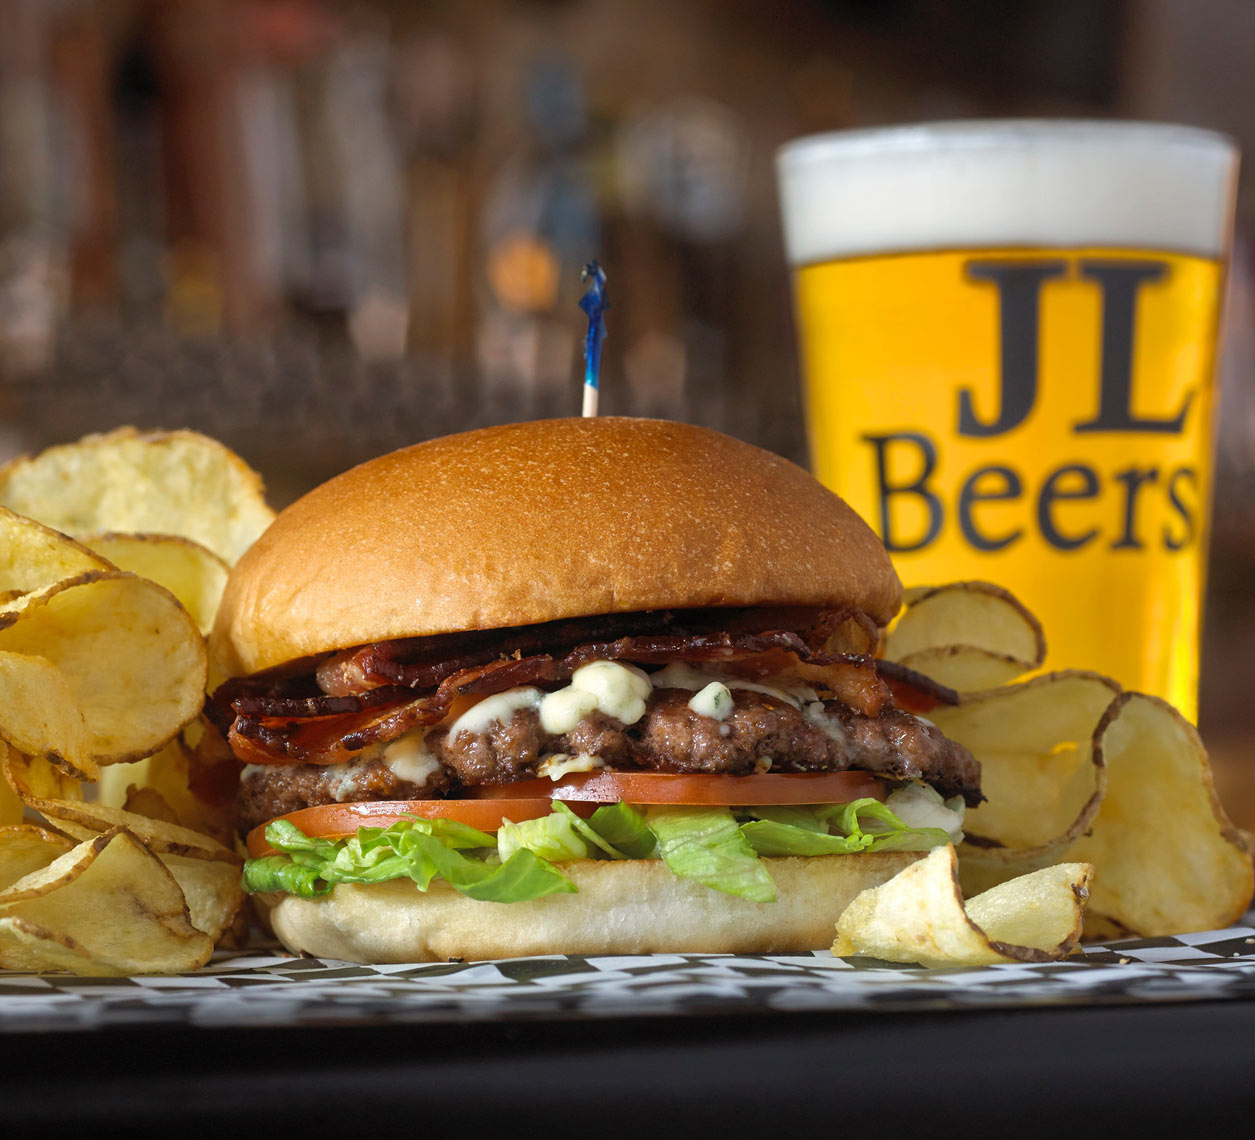 BLT-Blue-Burger/JL Beers/chips/food photography